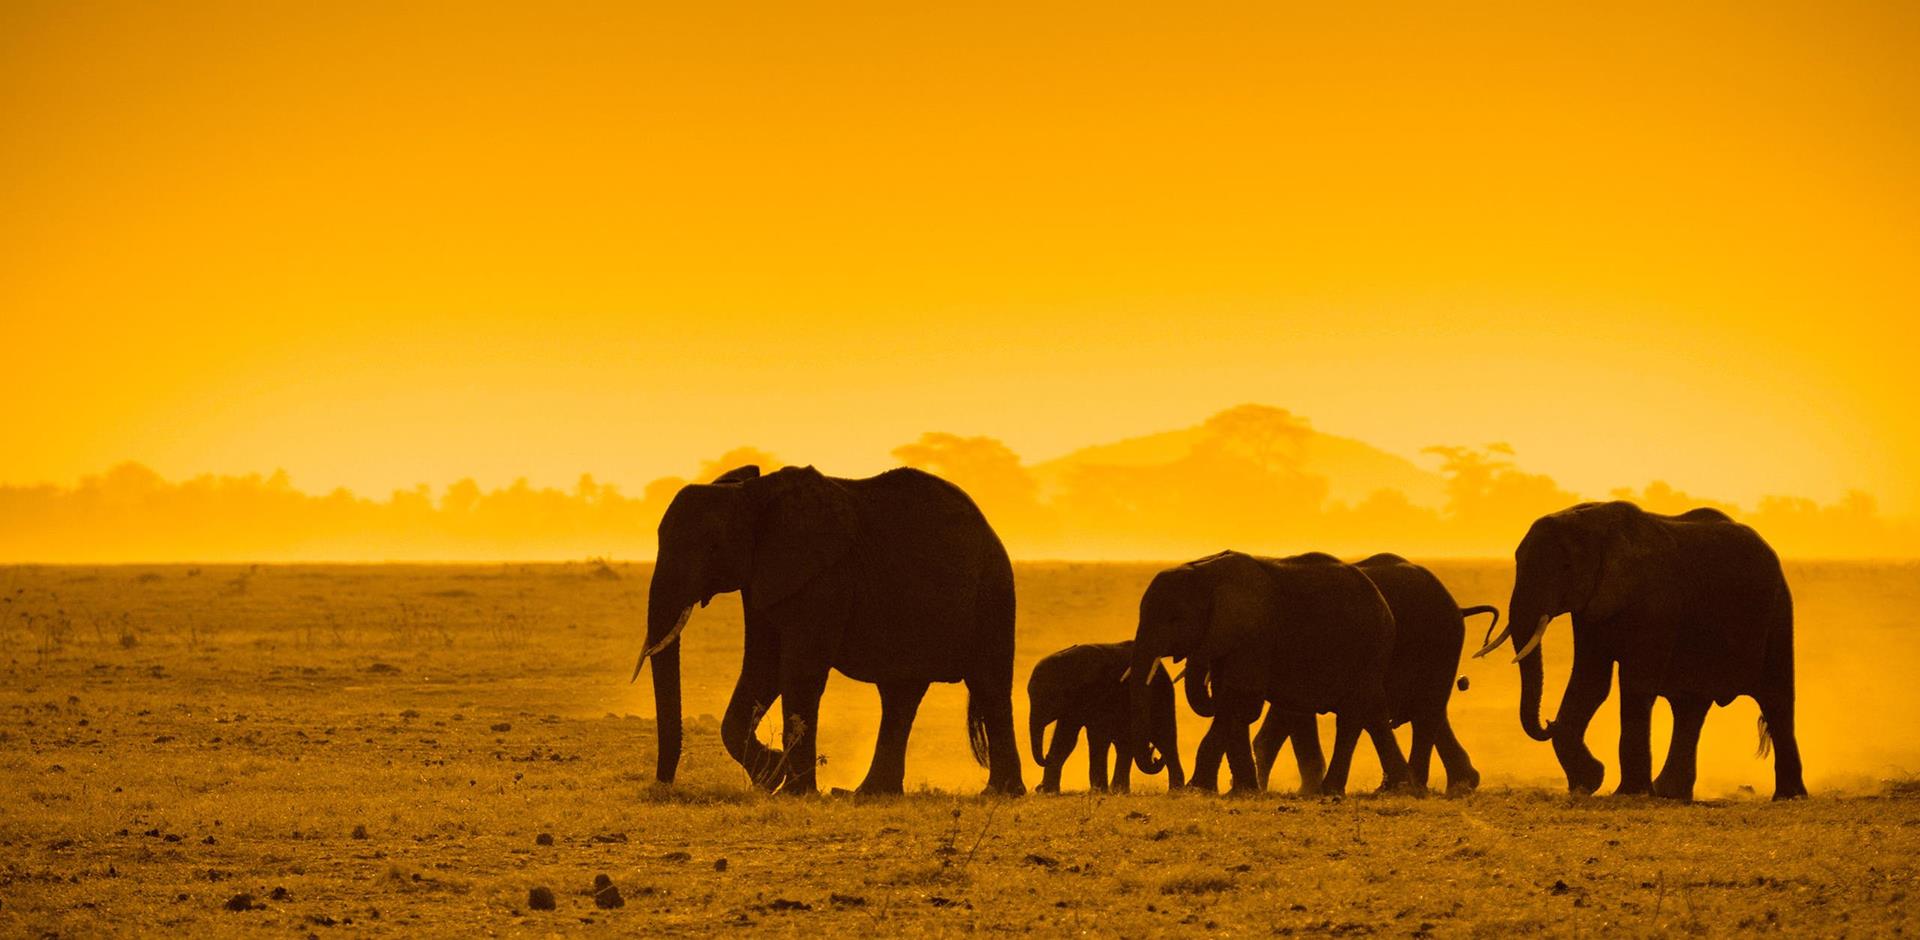 Elephant, Amboseli National Park, Kenya